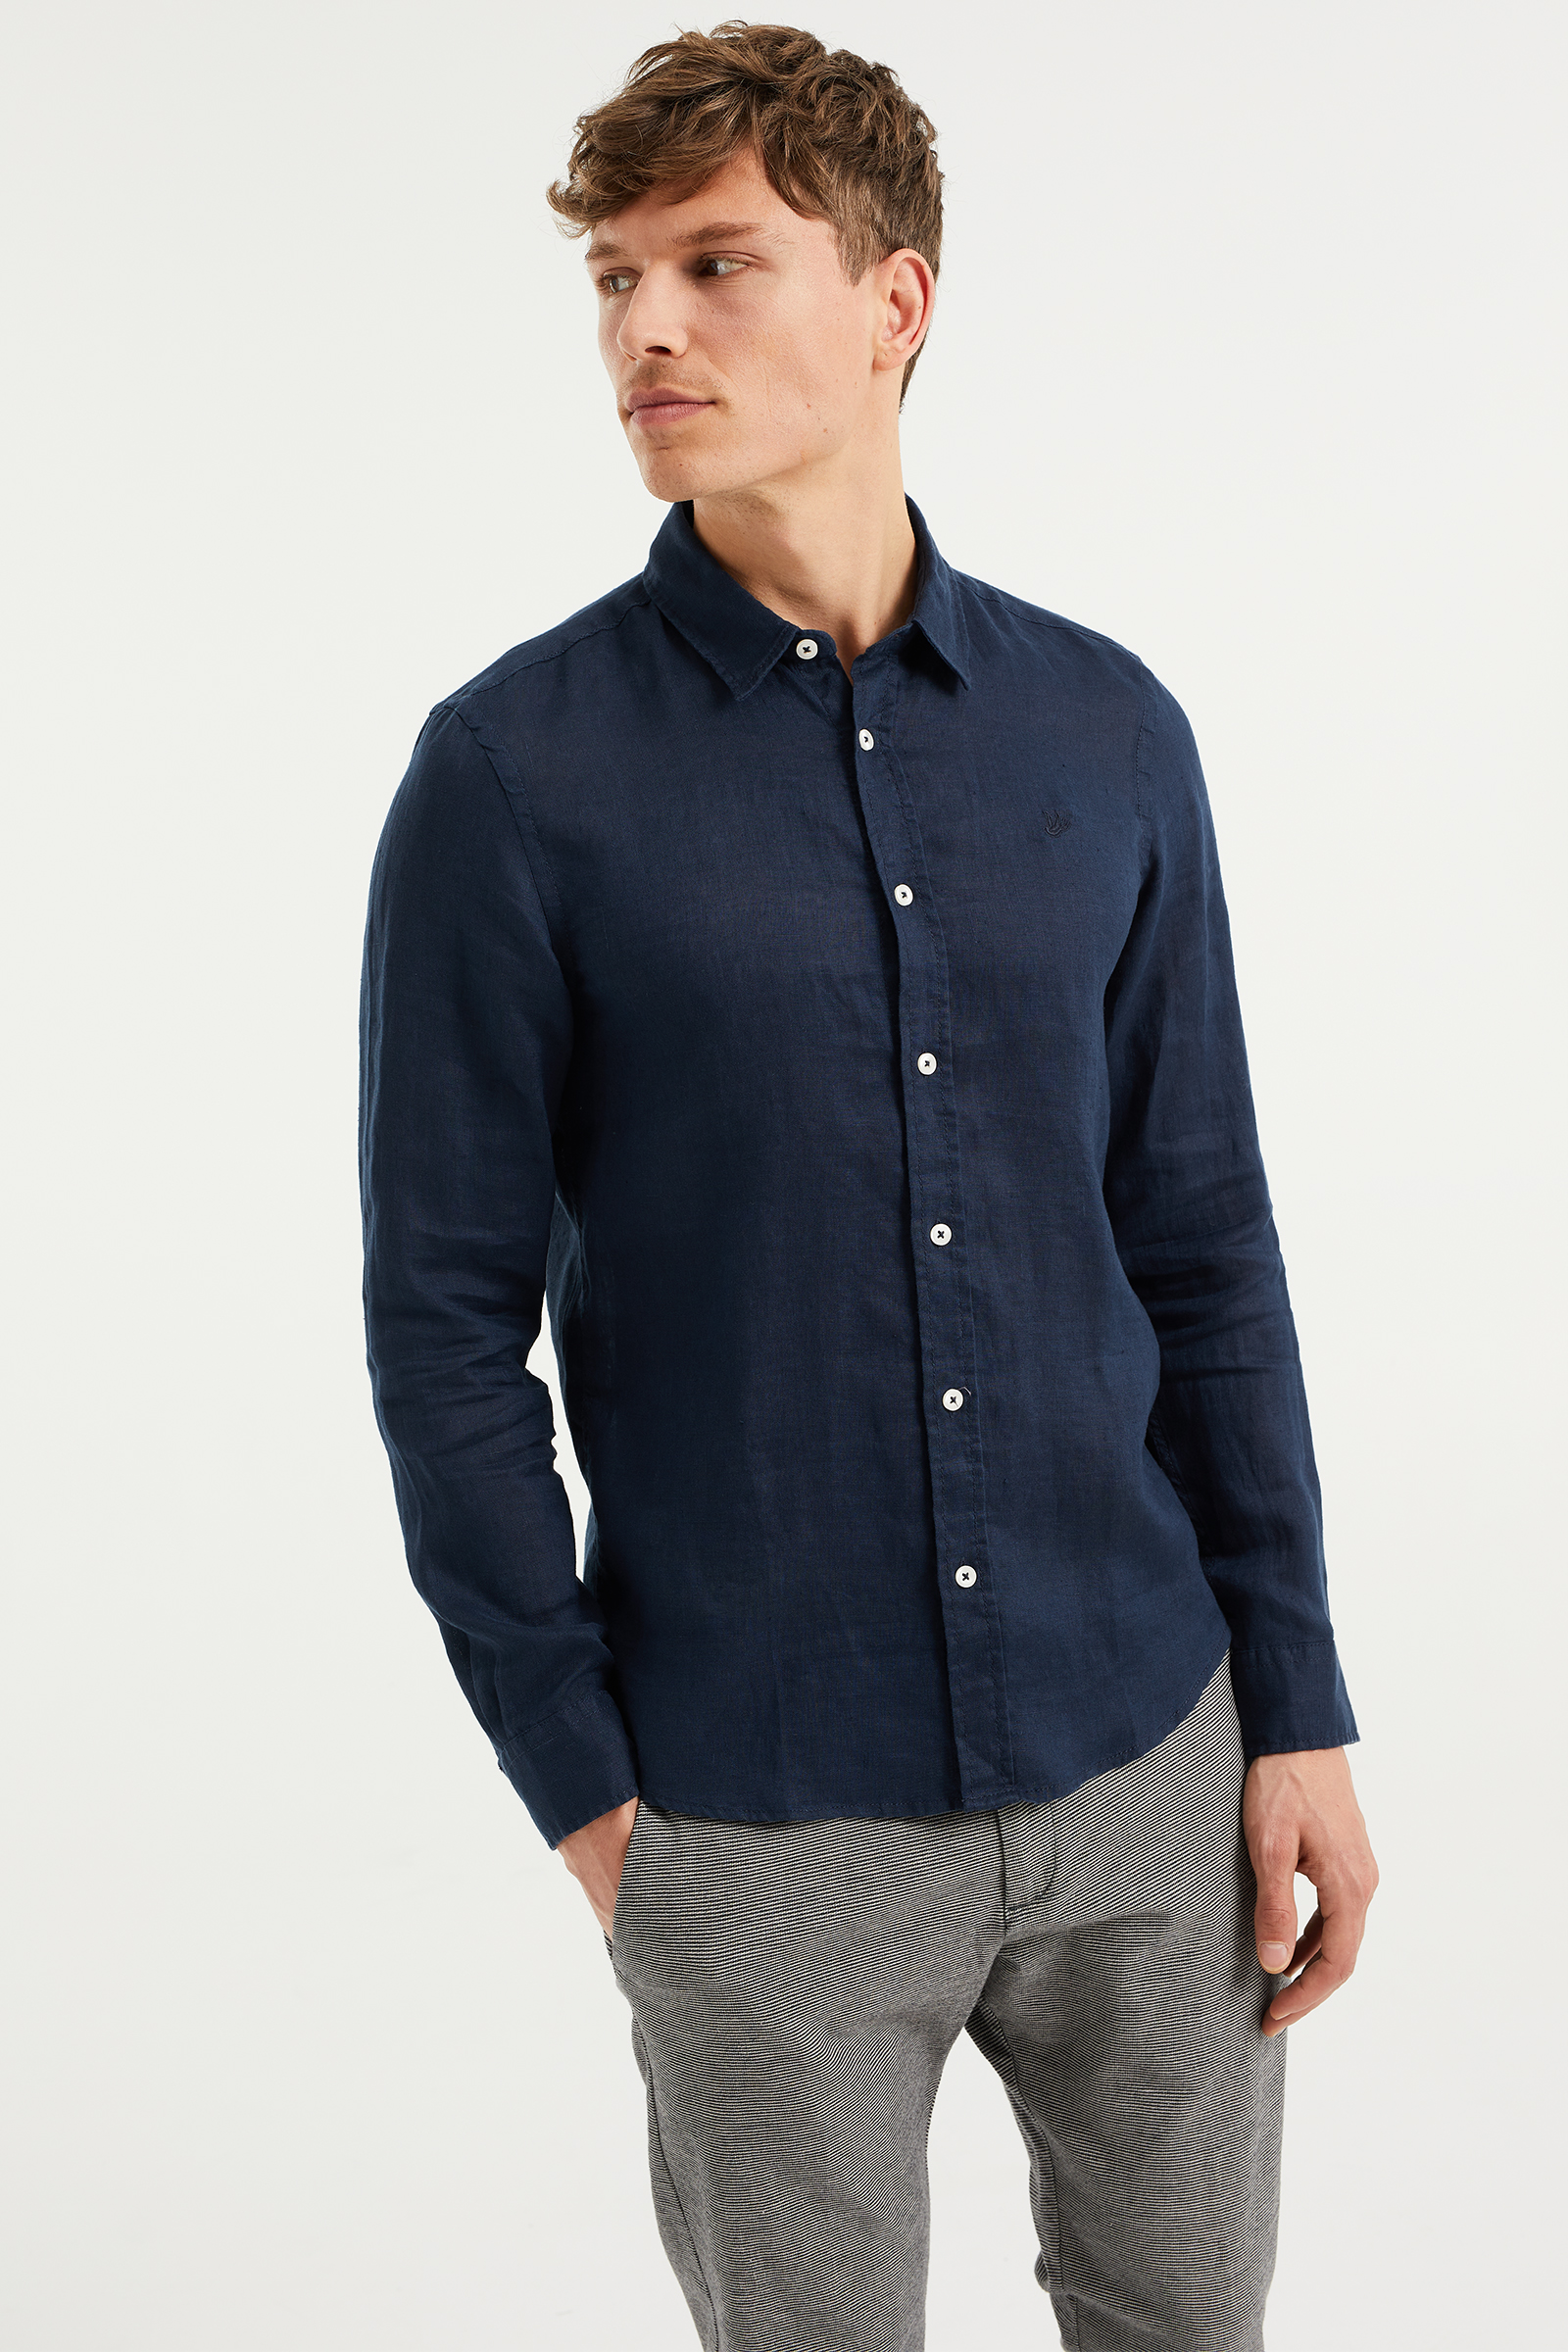 Zwart linnen overhemd/ Heren Shirt 100% linnen Kleding Herenkleding Overhemden & T-shirts T-shirts 